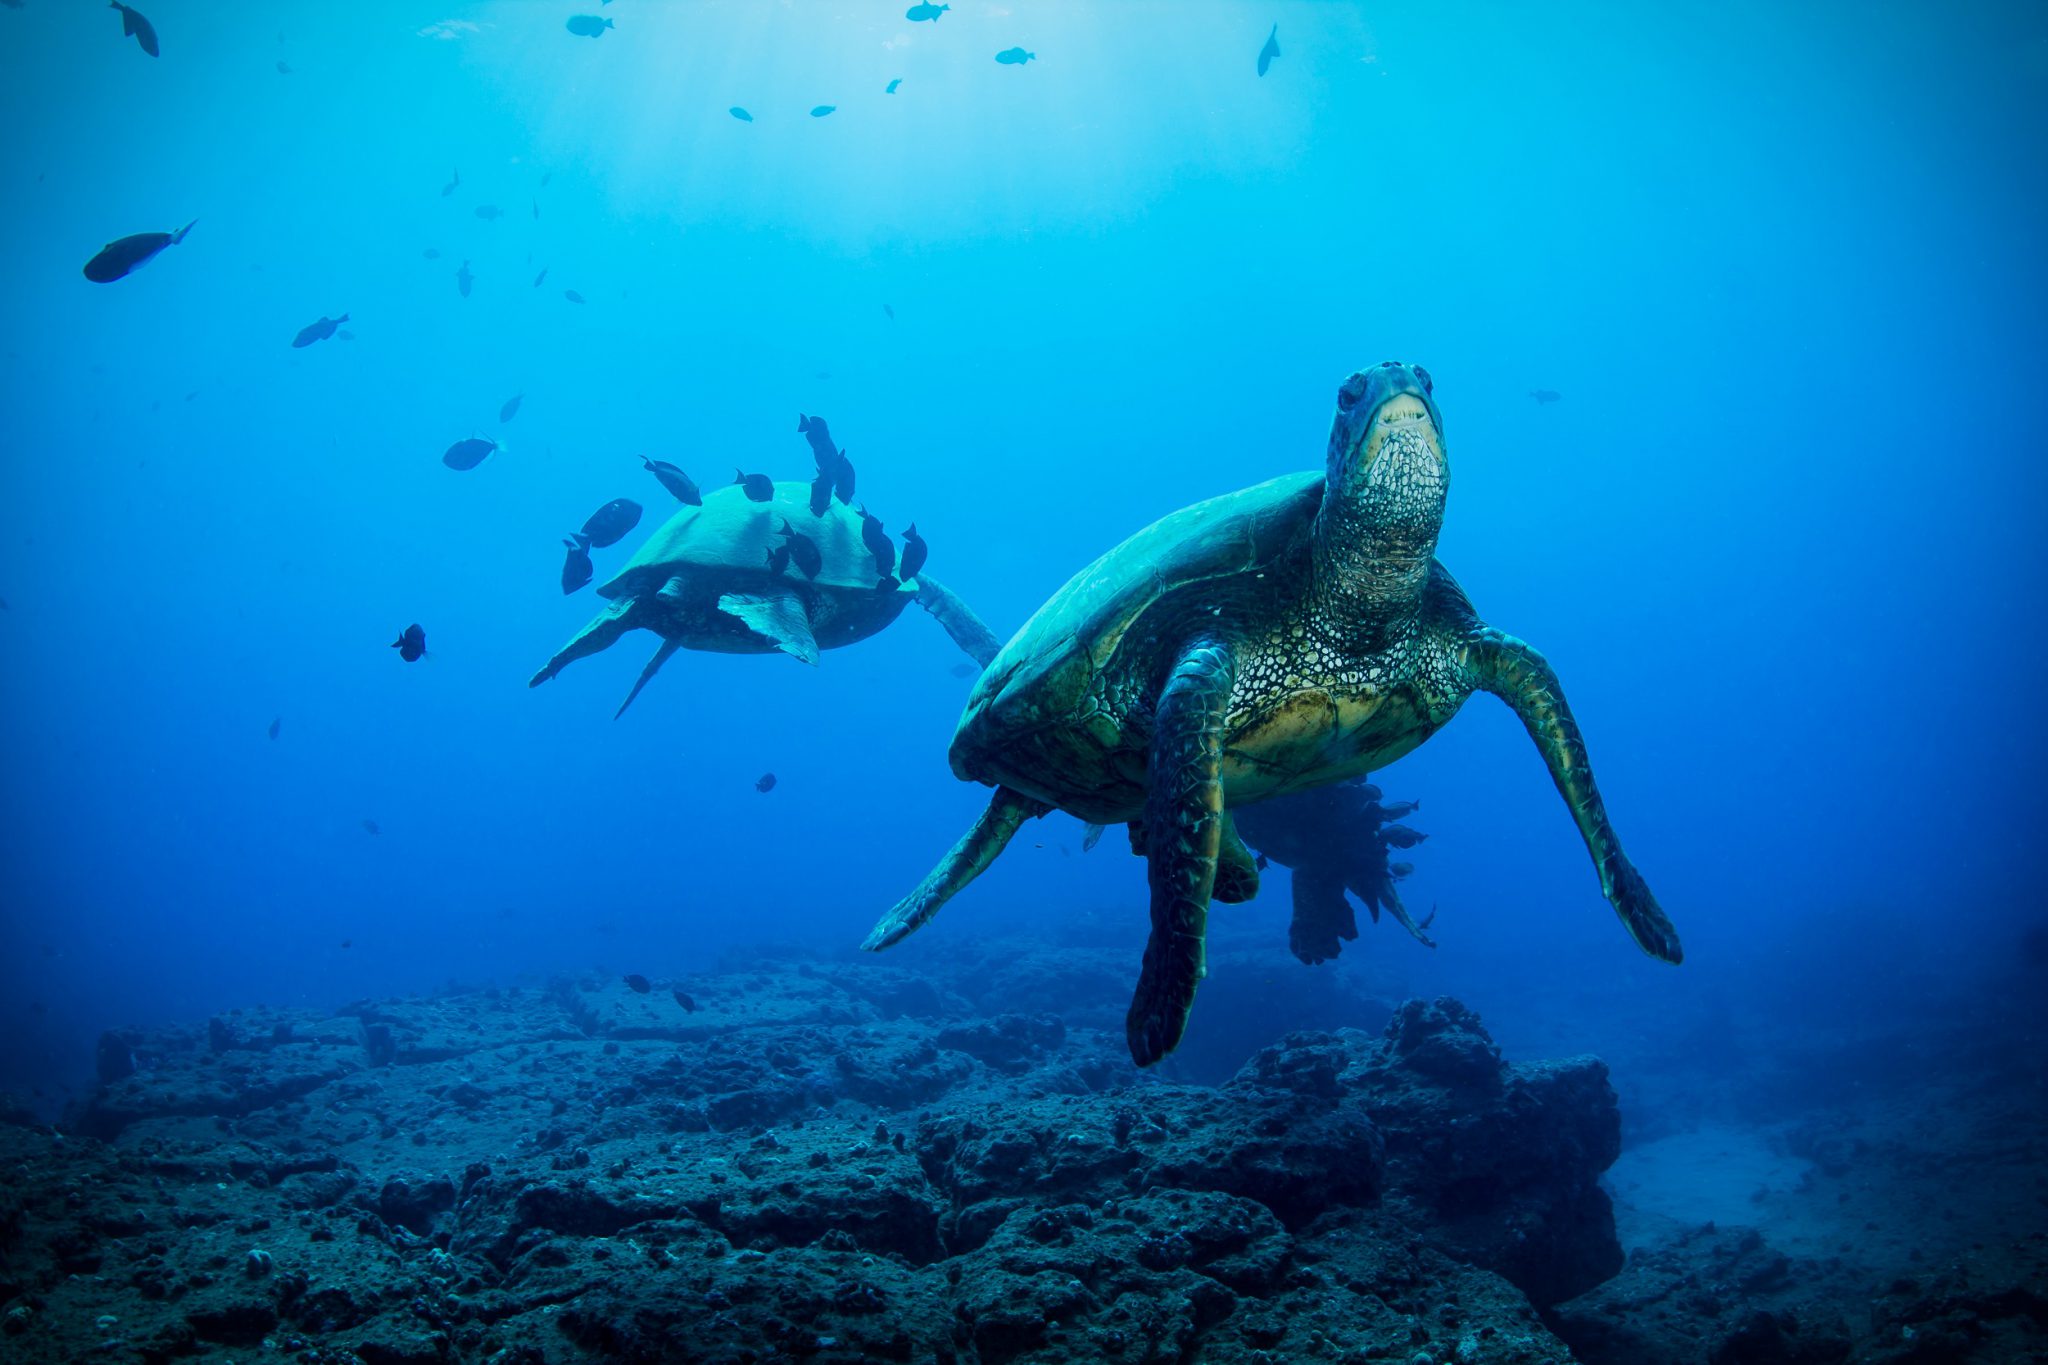 Sea Turtles at depth